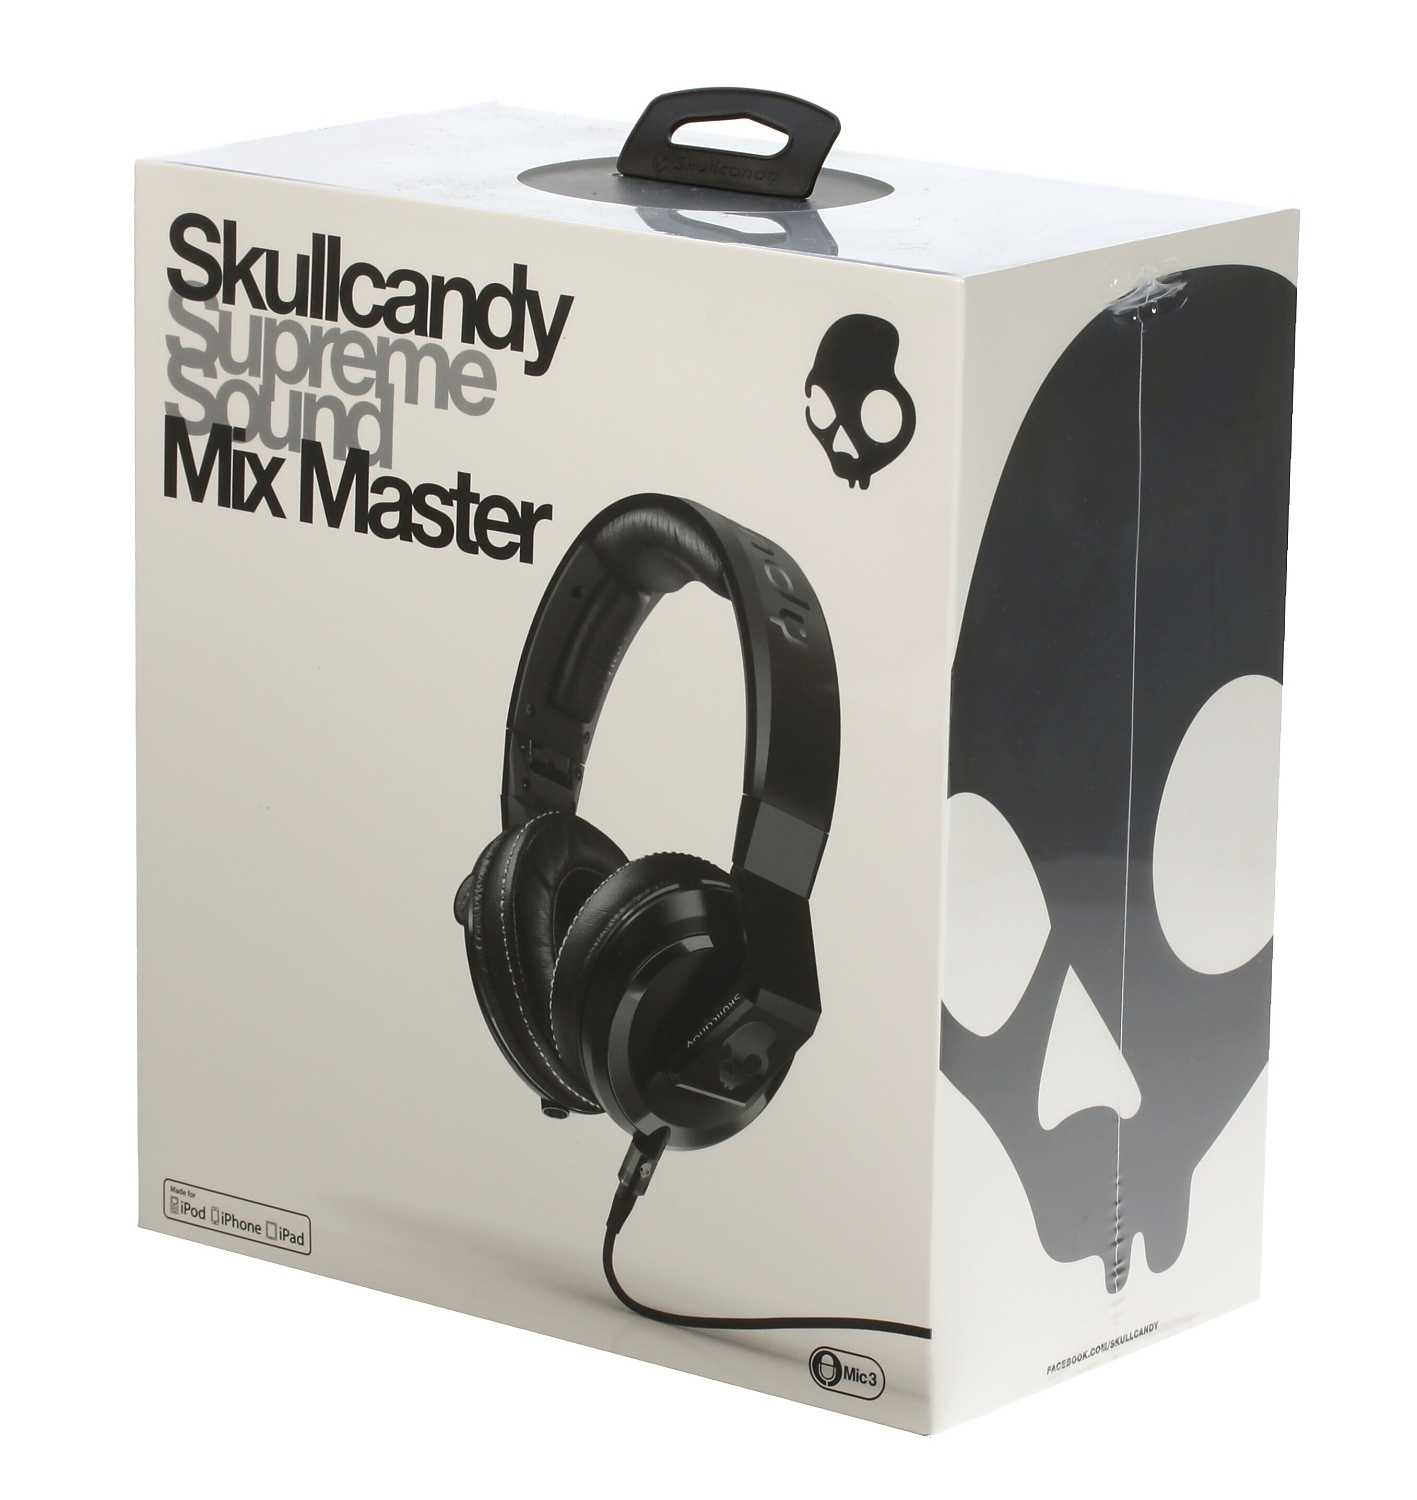 Skullcandy mix master dj